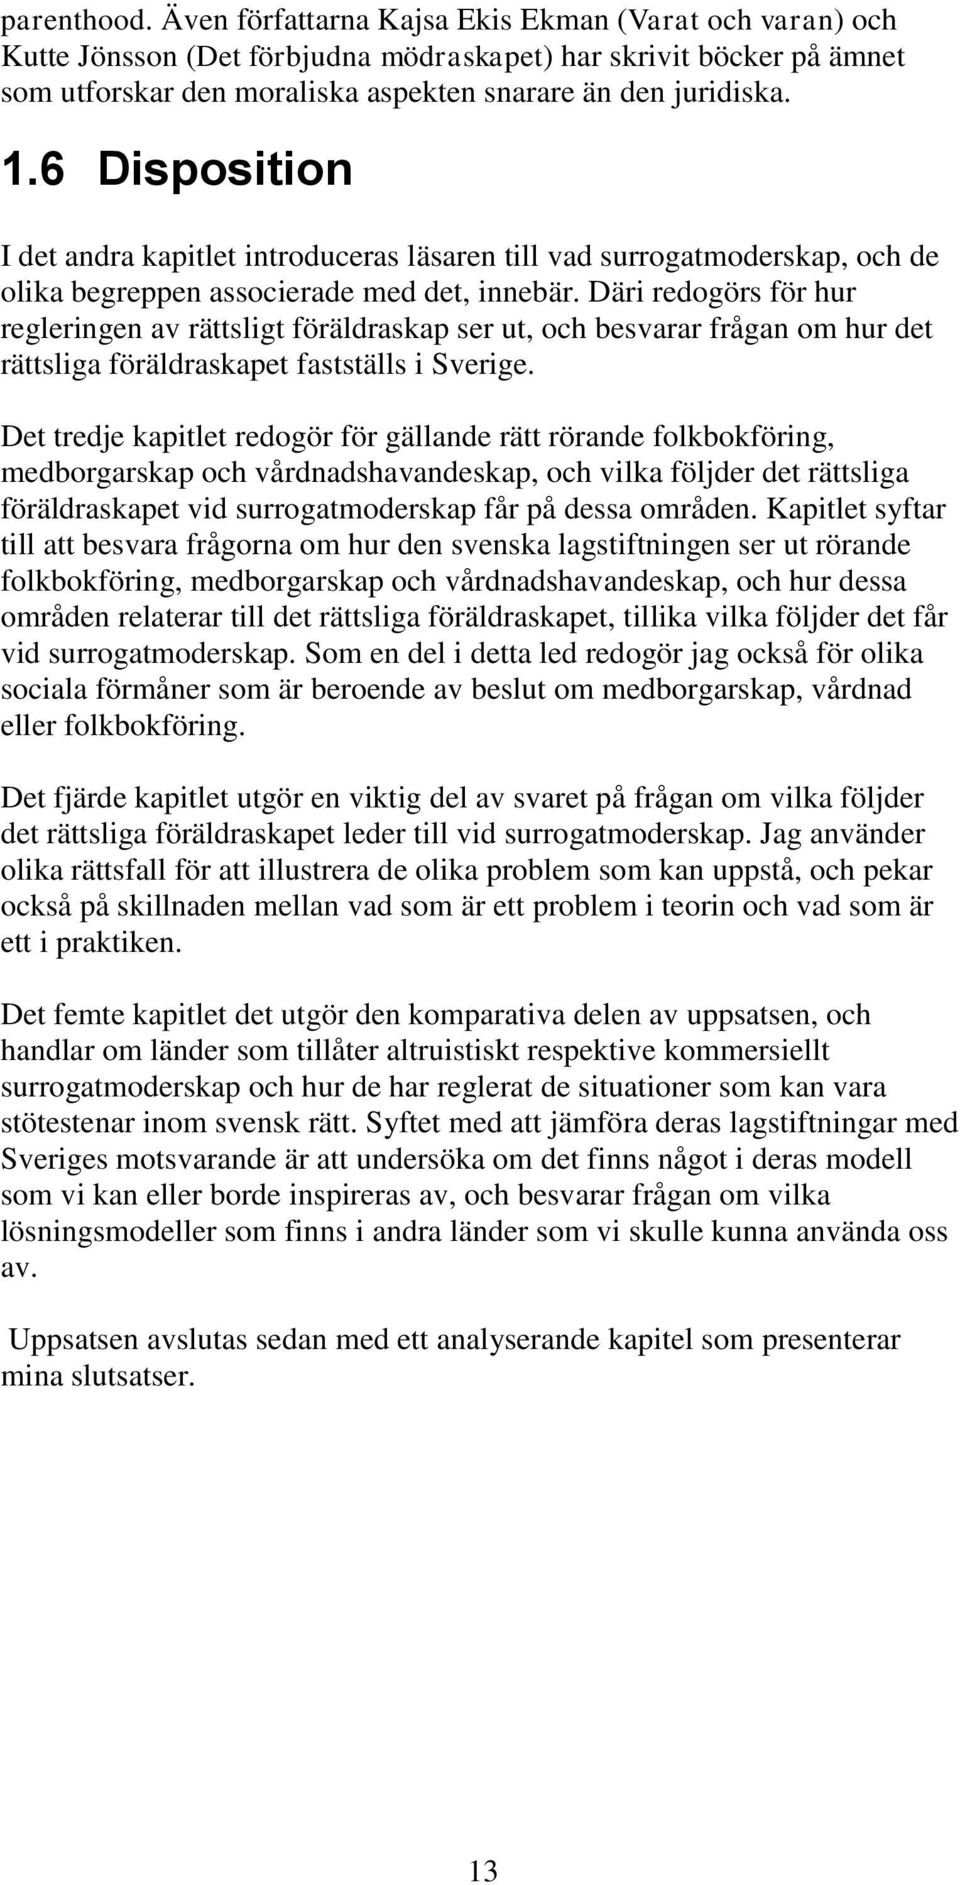 Däri redogörs för hur regleringen av rättsligt föräldraskap ser ut, och besvarar frågan om hur det rättsliga föräldraskapet fastställs i Sverige.